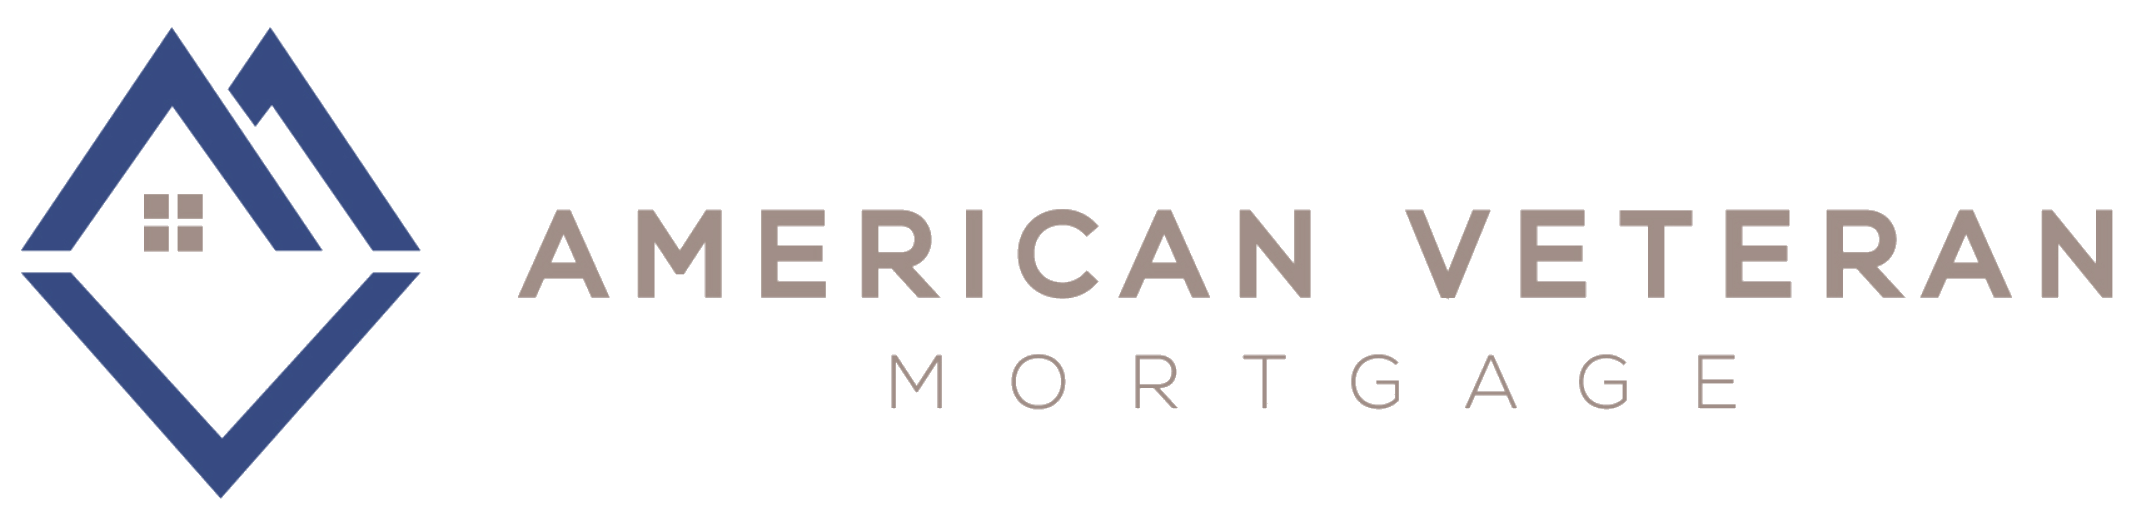 American Veteran Mortgage